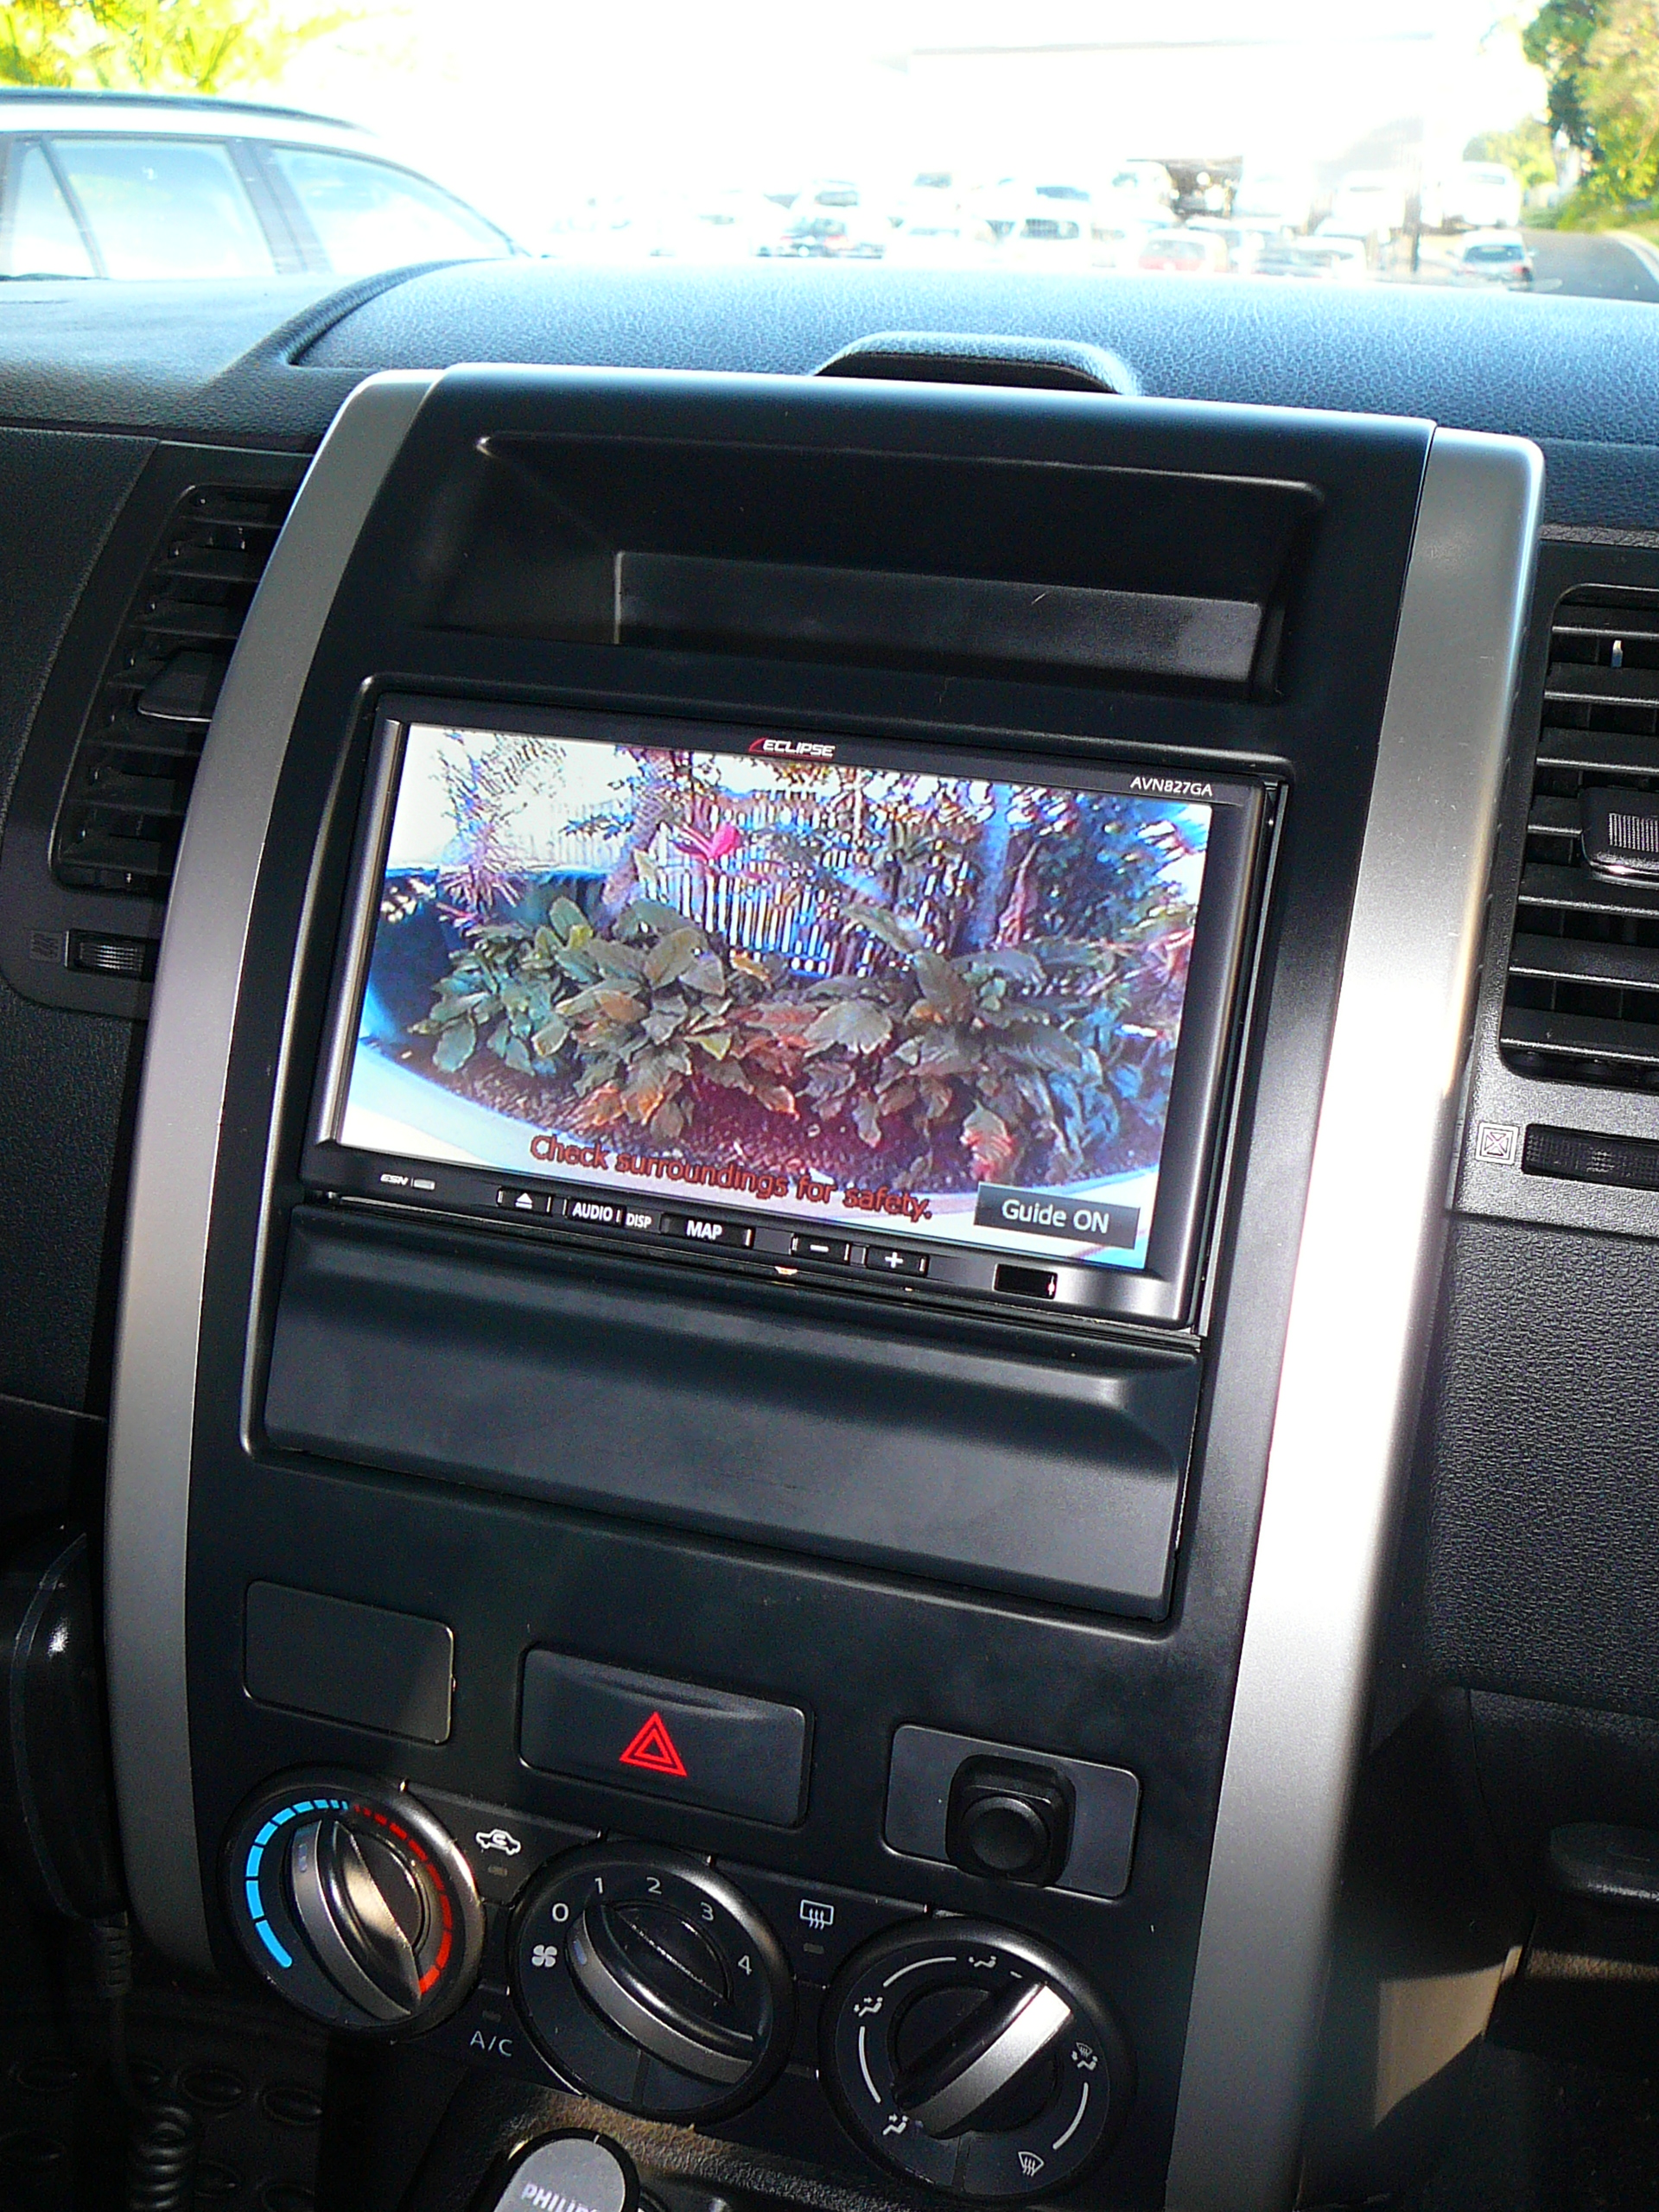 Nissan Xtrail 2012, Eclipse GPS Navigation Camera System